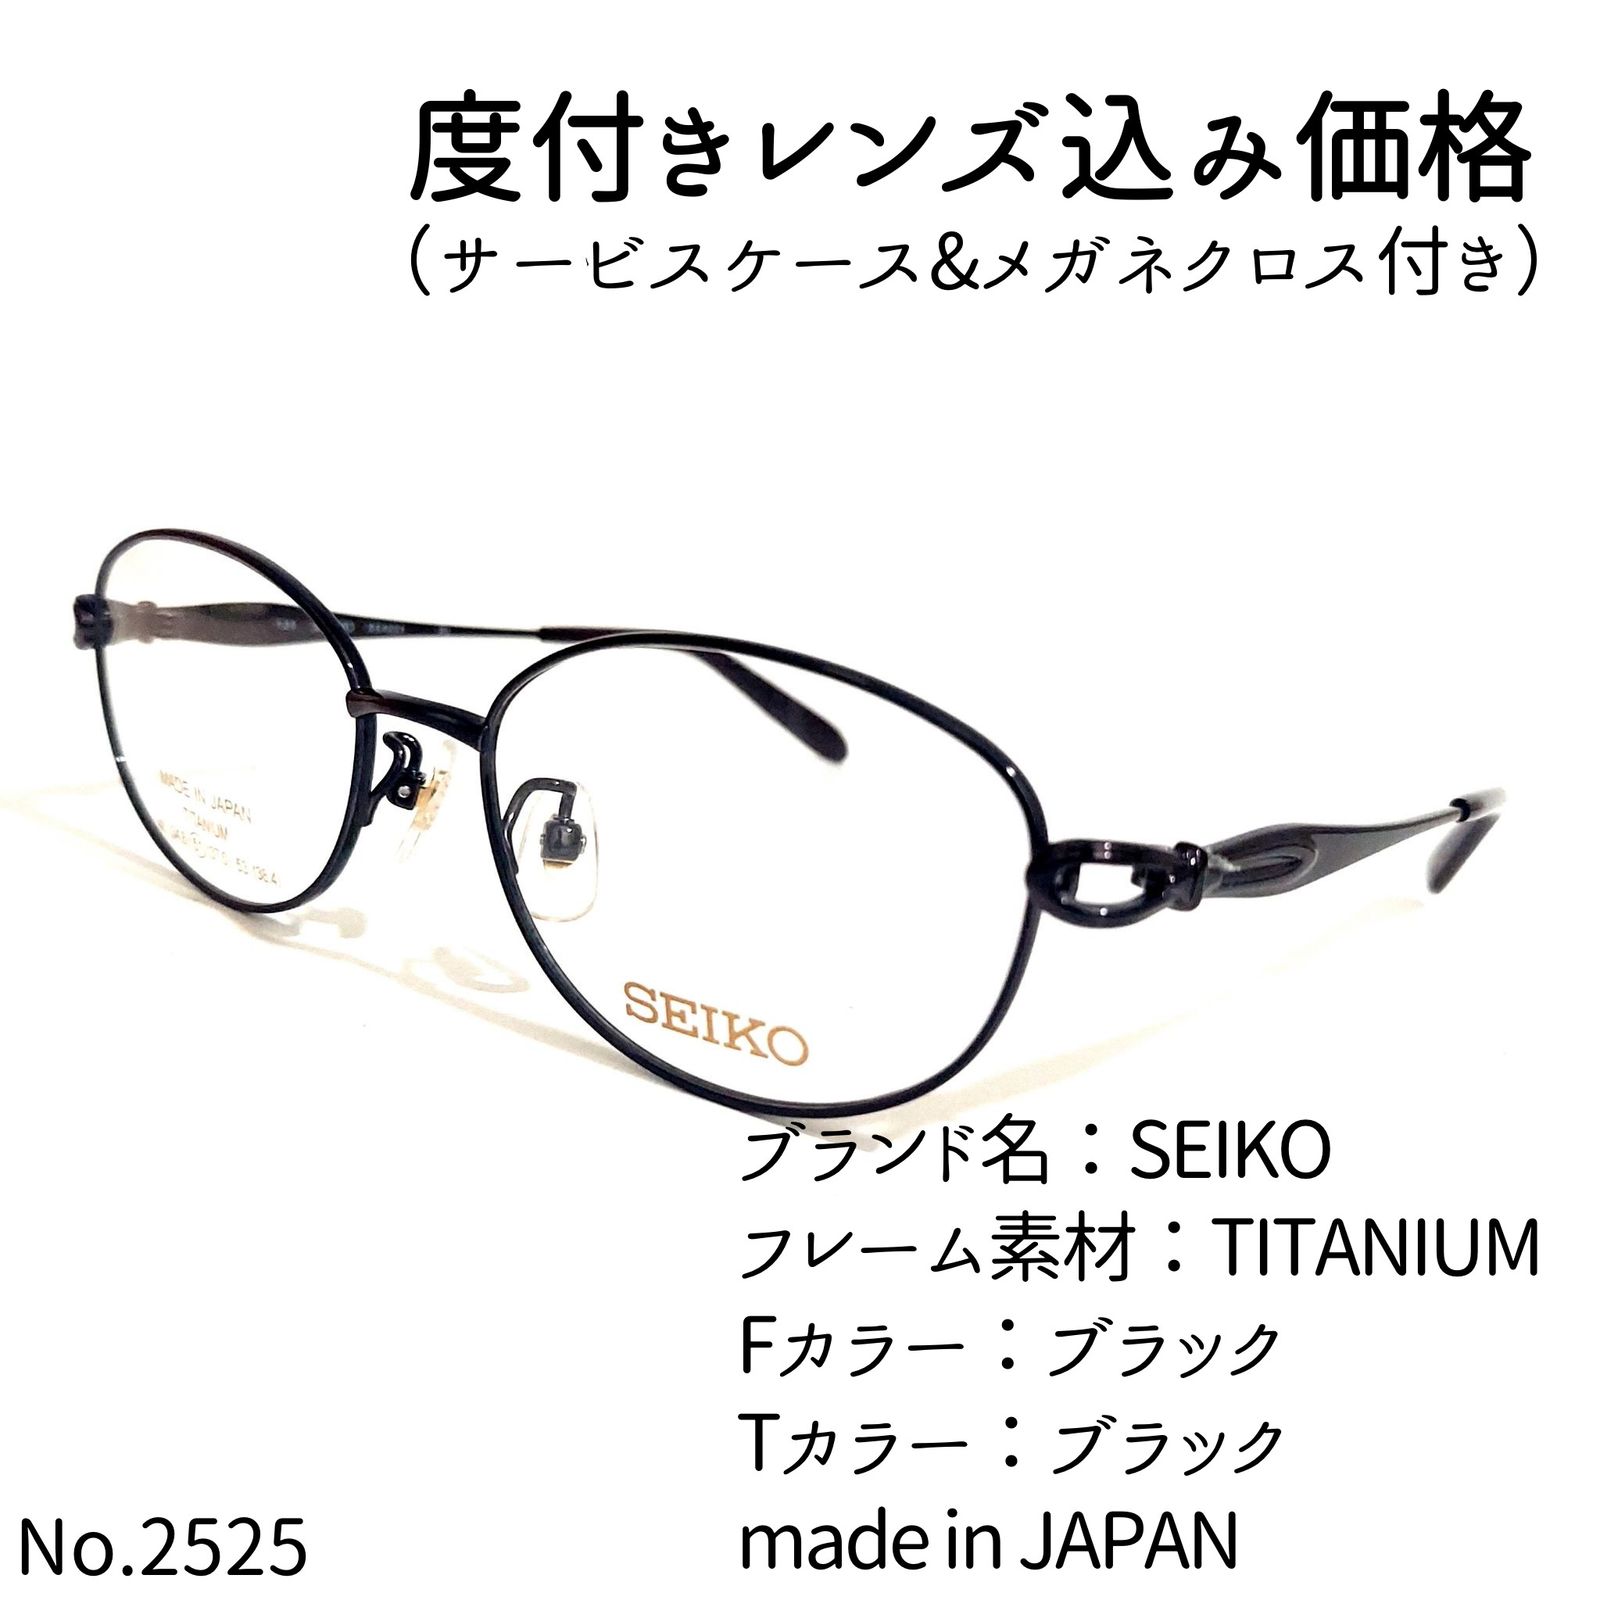 No.2525メガネ SEIKO【度数入り込み価格】 - メルカリ